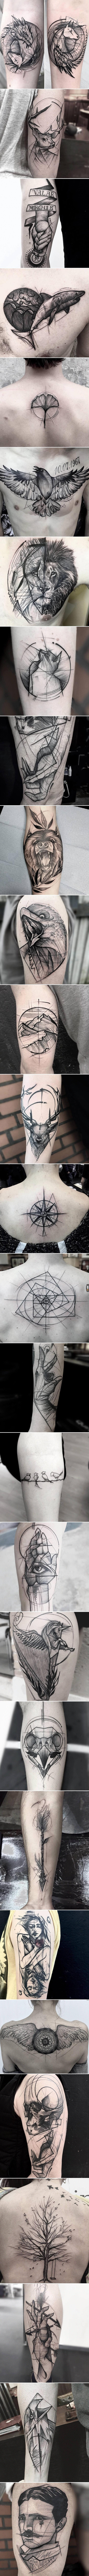 Tatuaże w formie artystycznego szkicu